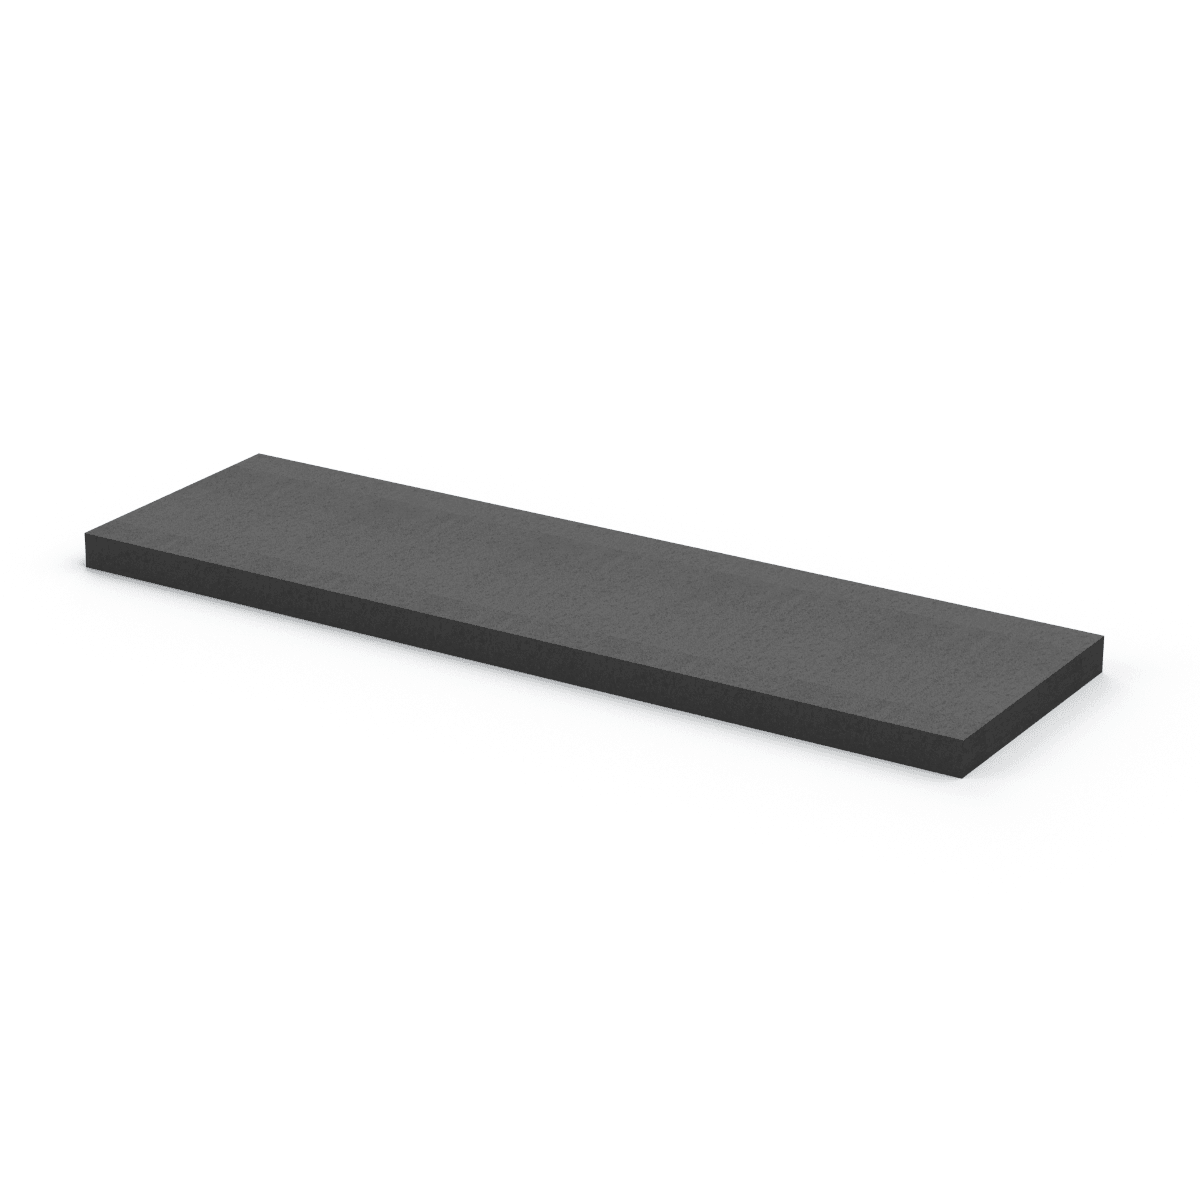 PE Foam plank for Pelican® 1750 case